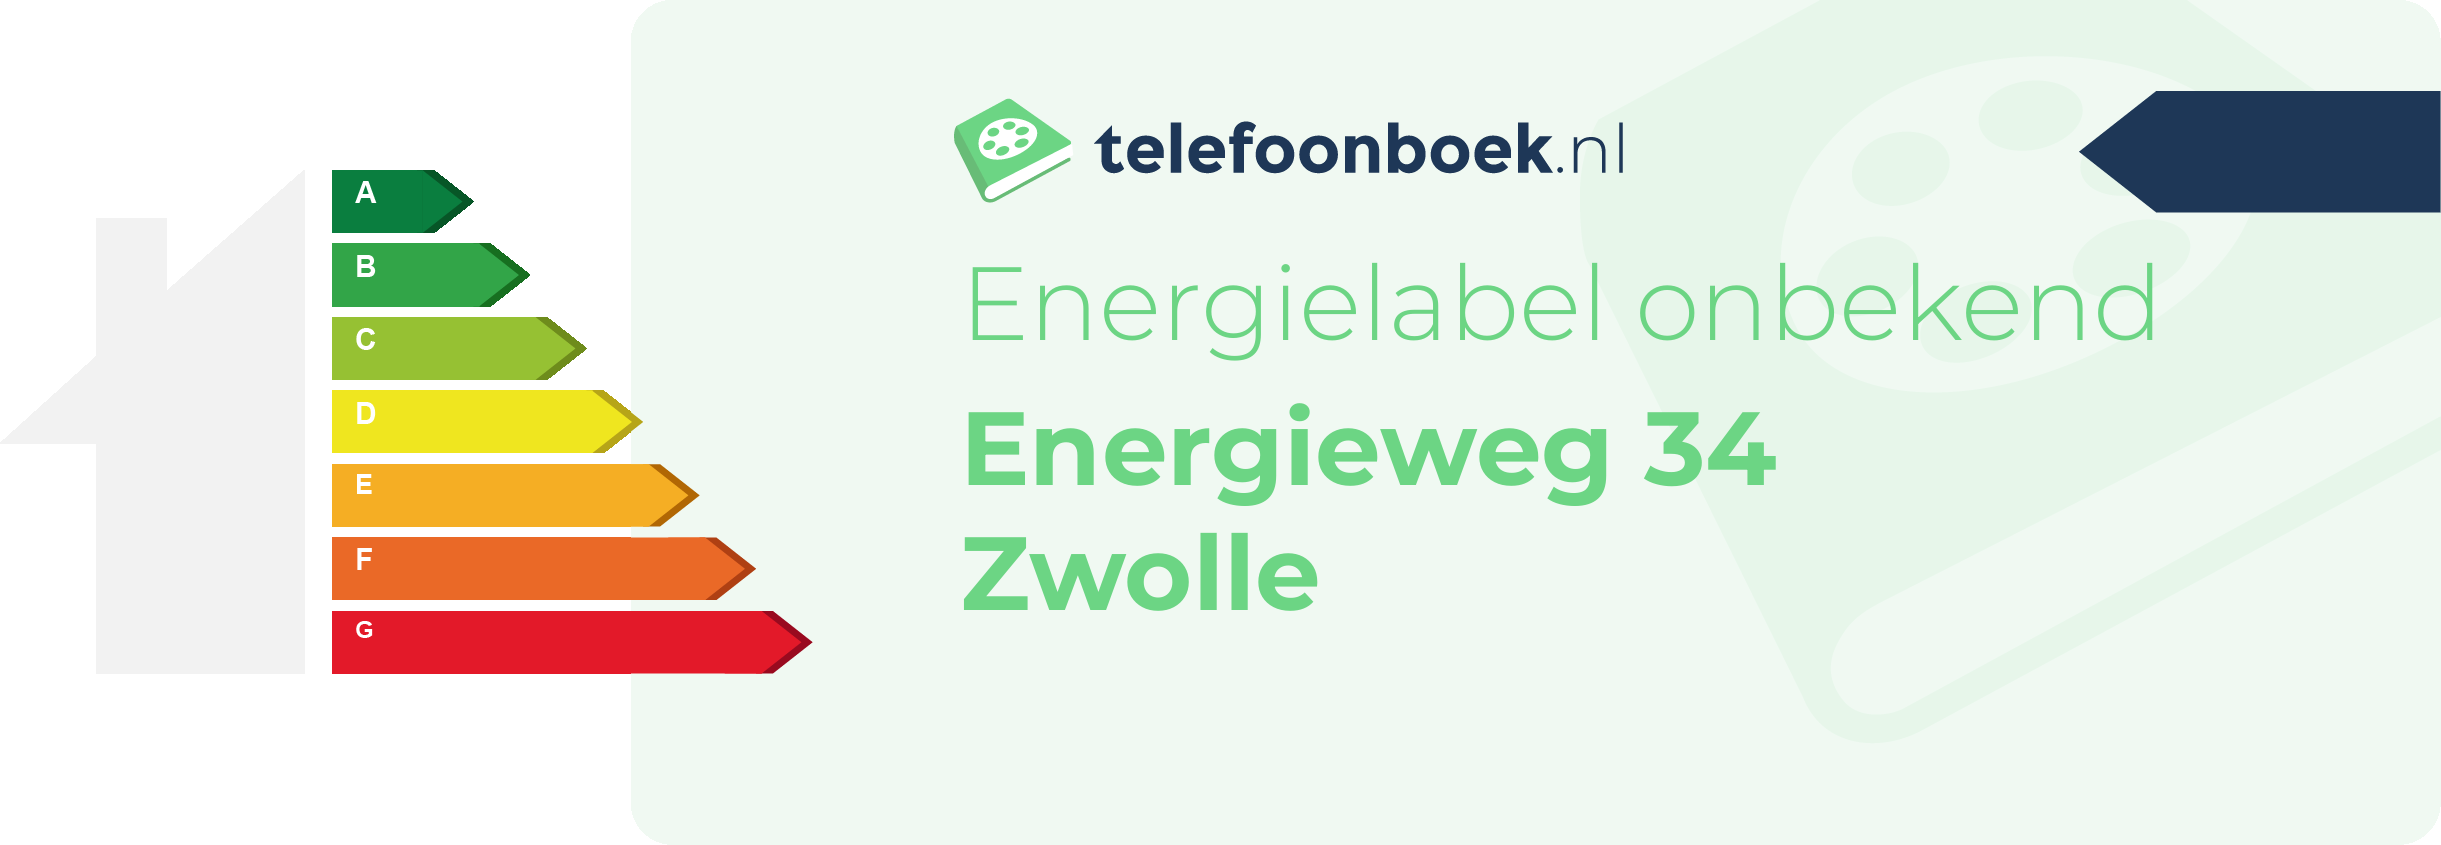 Energielabel Energieweg 34 Zwolle